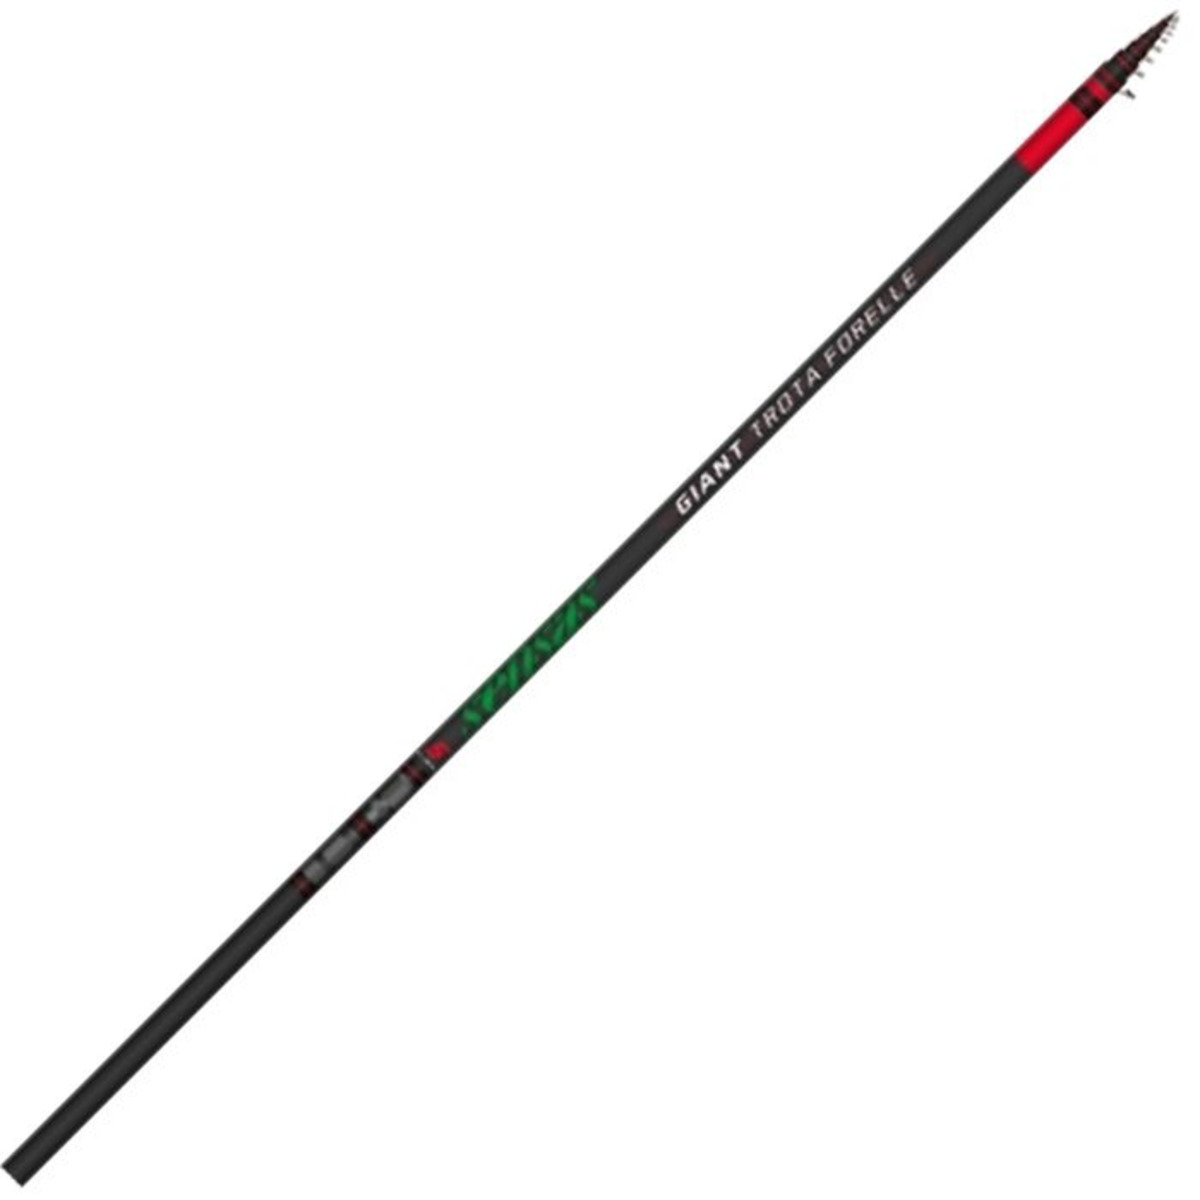 Sensas Giant trota Forelle Rod - 4.50 m - 15-25 g 